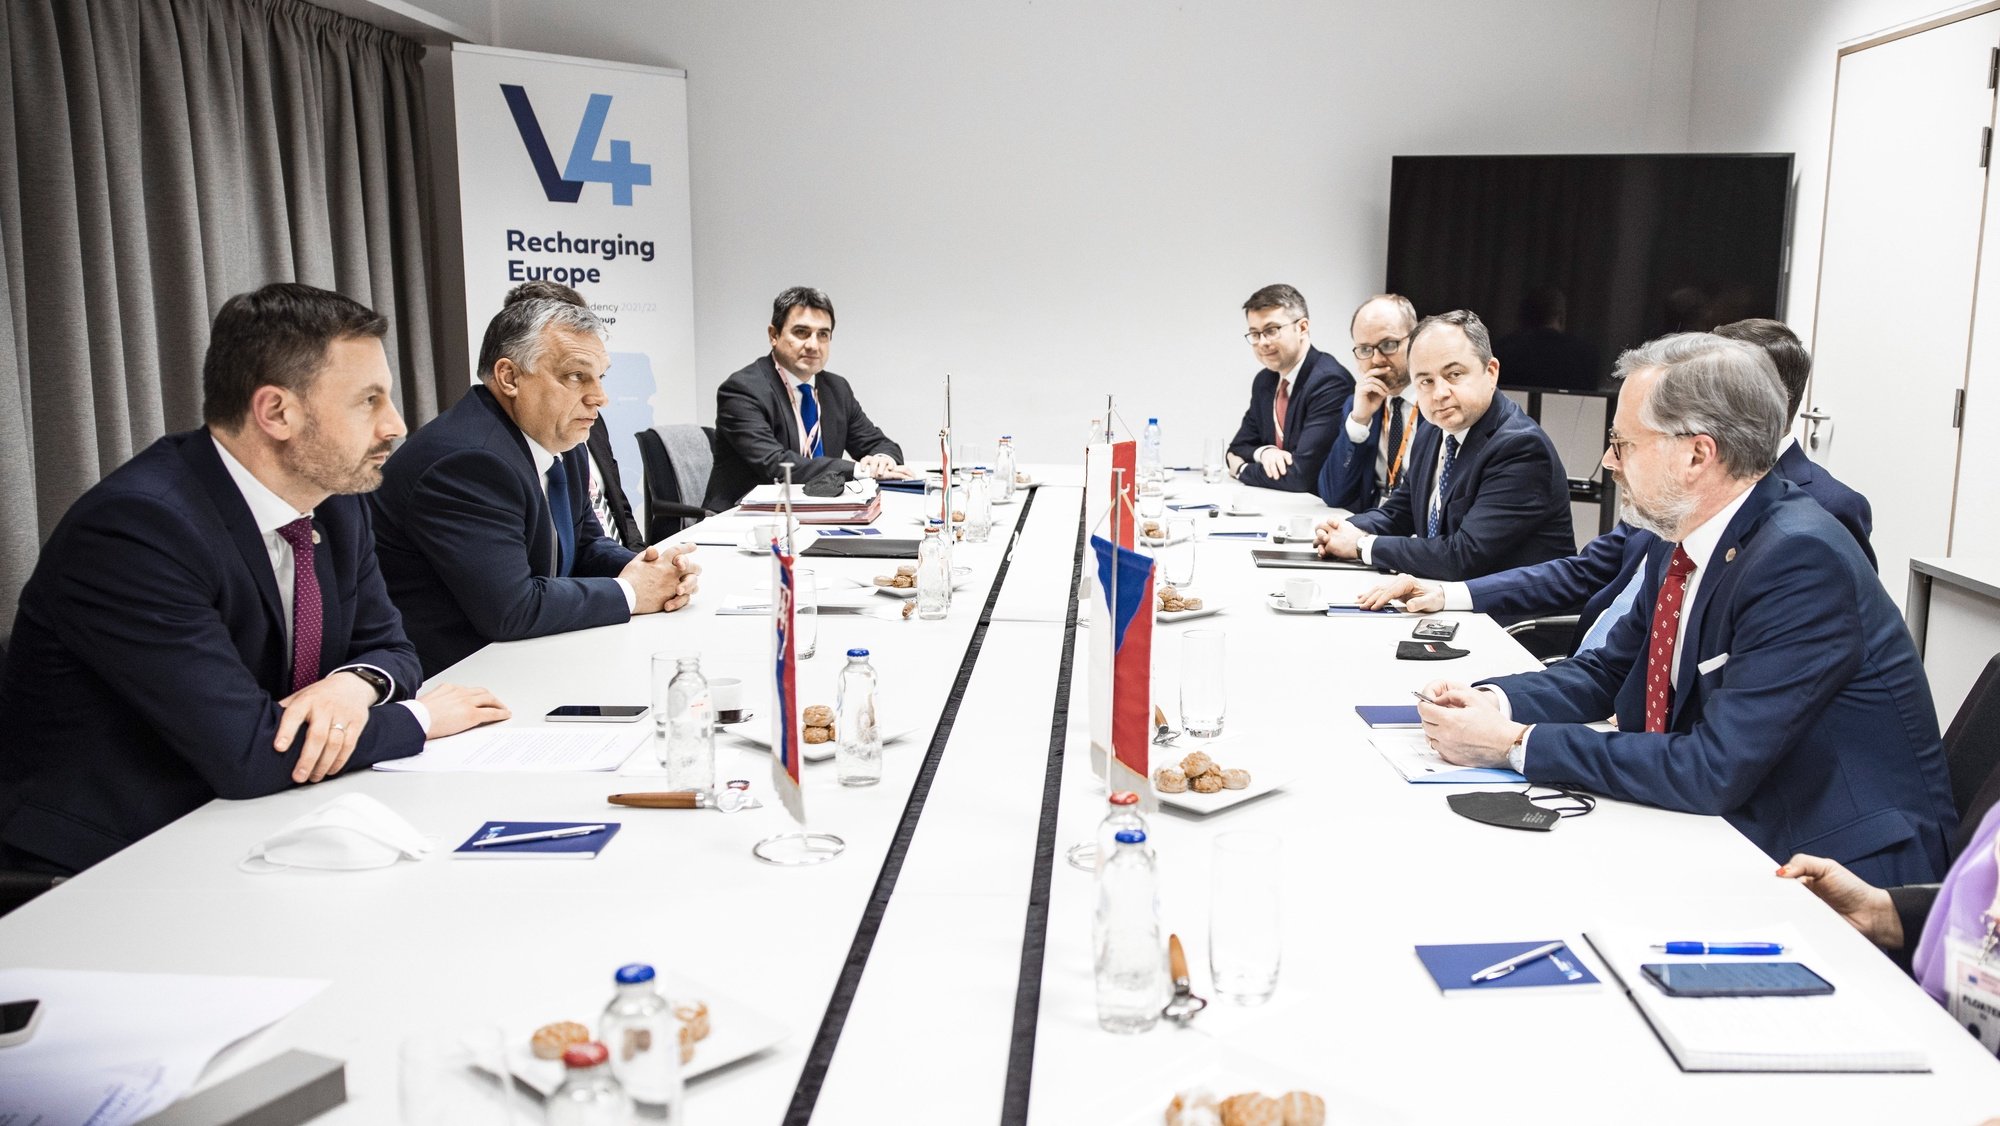 O primeiro-ministro polaco Mateusz Morawiecki, o primeiro-ministro da República Checa Petr Fiala, o primeiro-ministro húngaro Viktor Orban e o primeiro-ministro da Eslováquia Eduard Heger